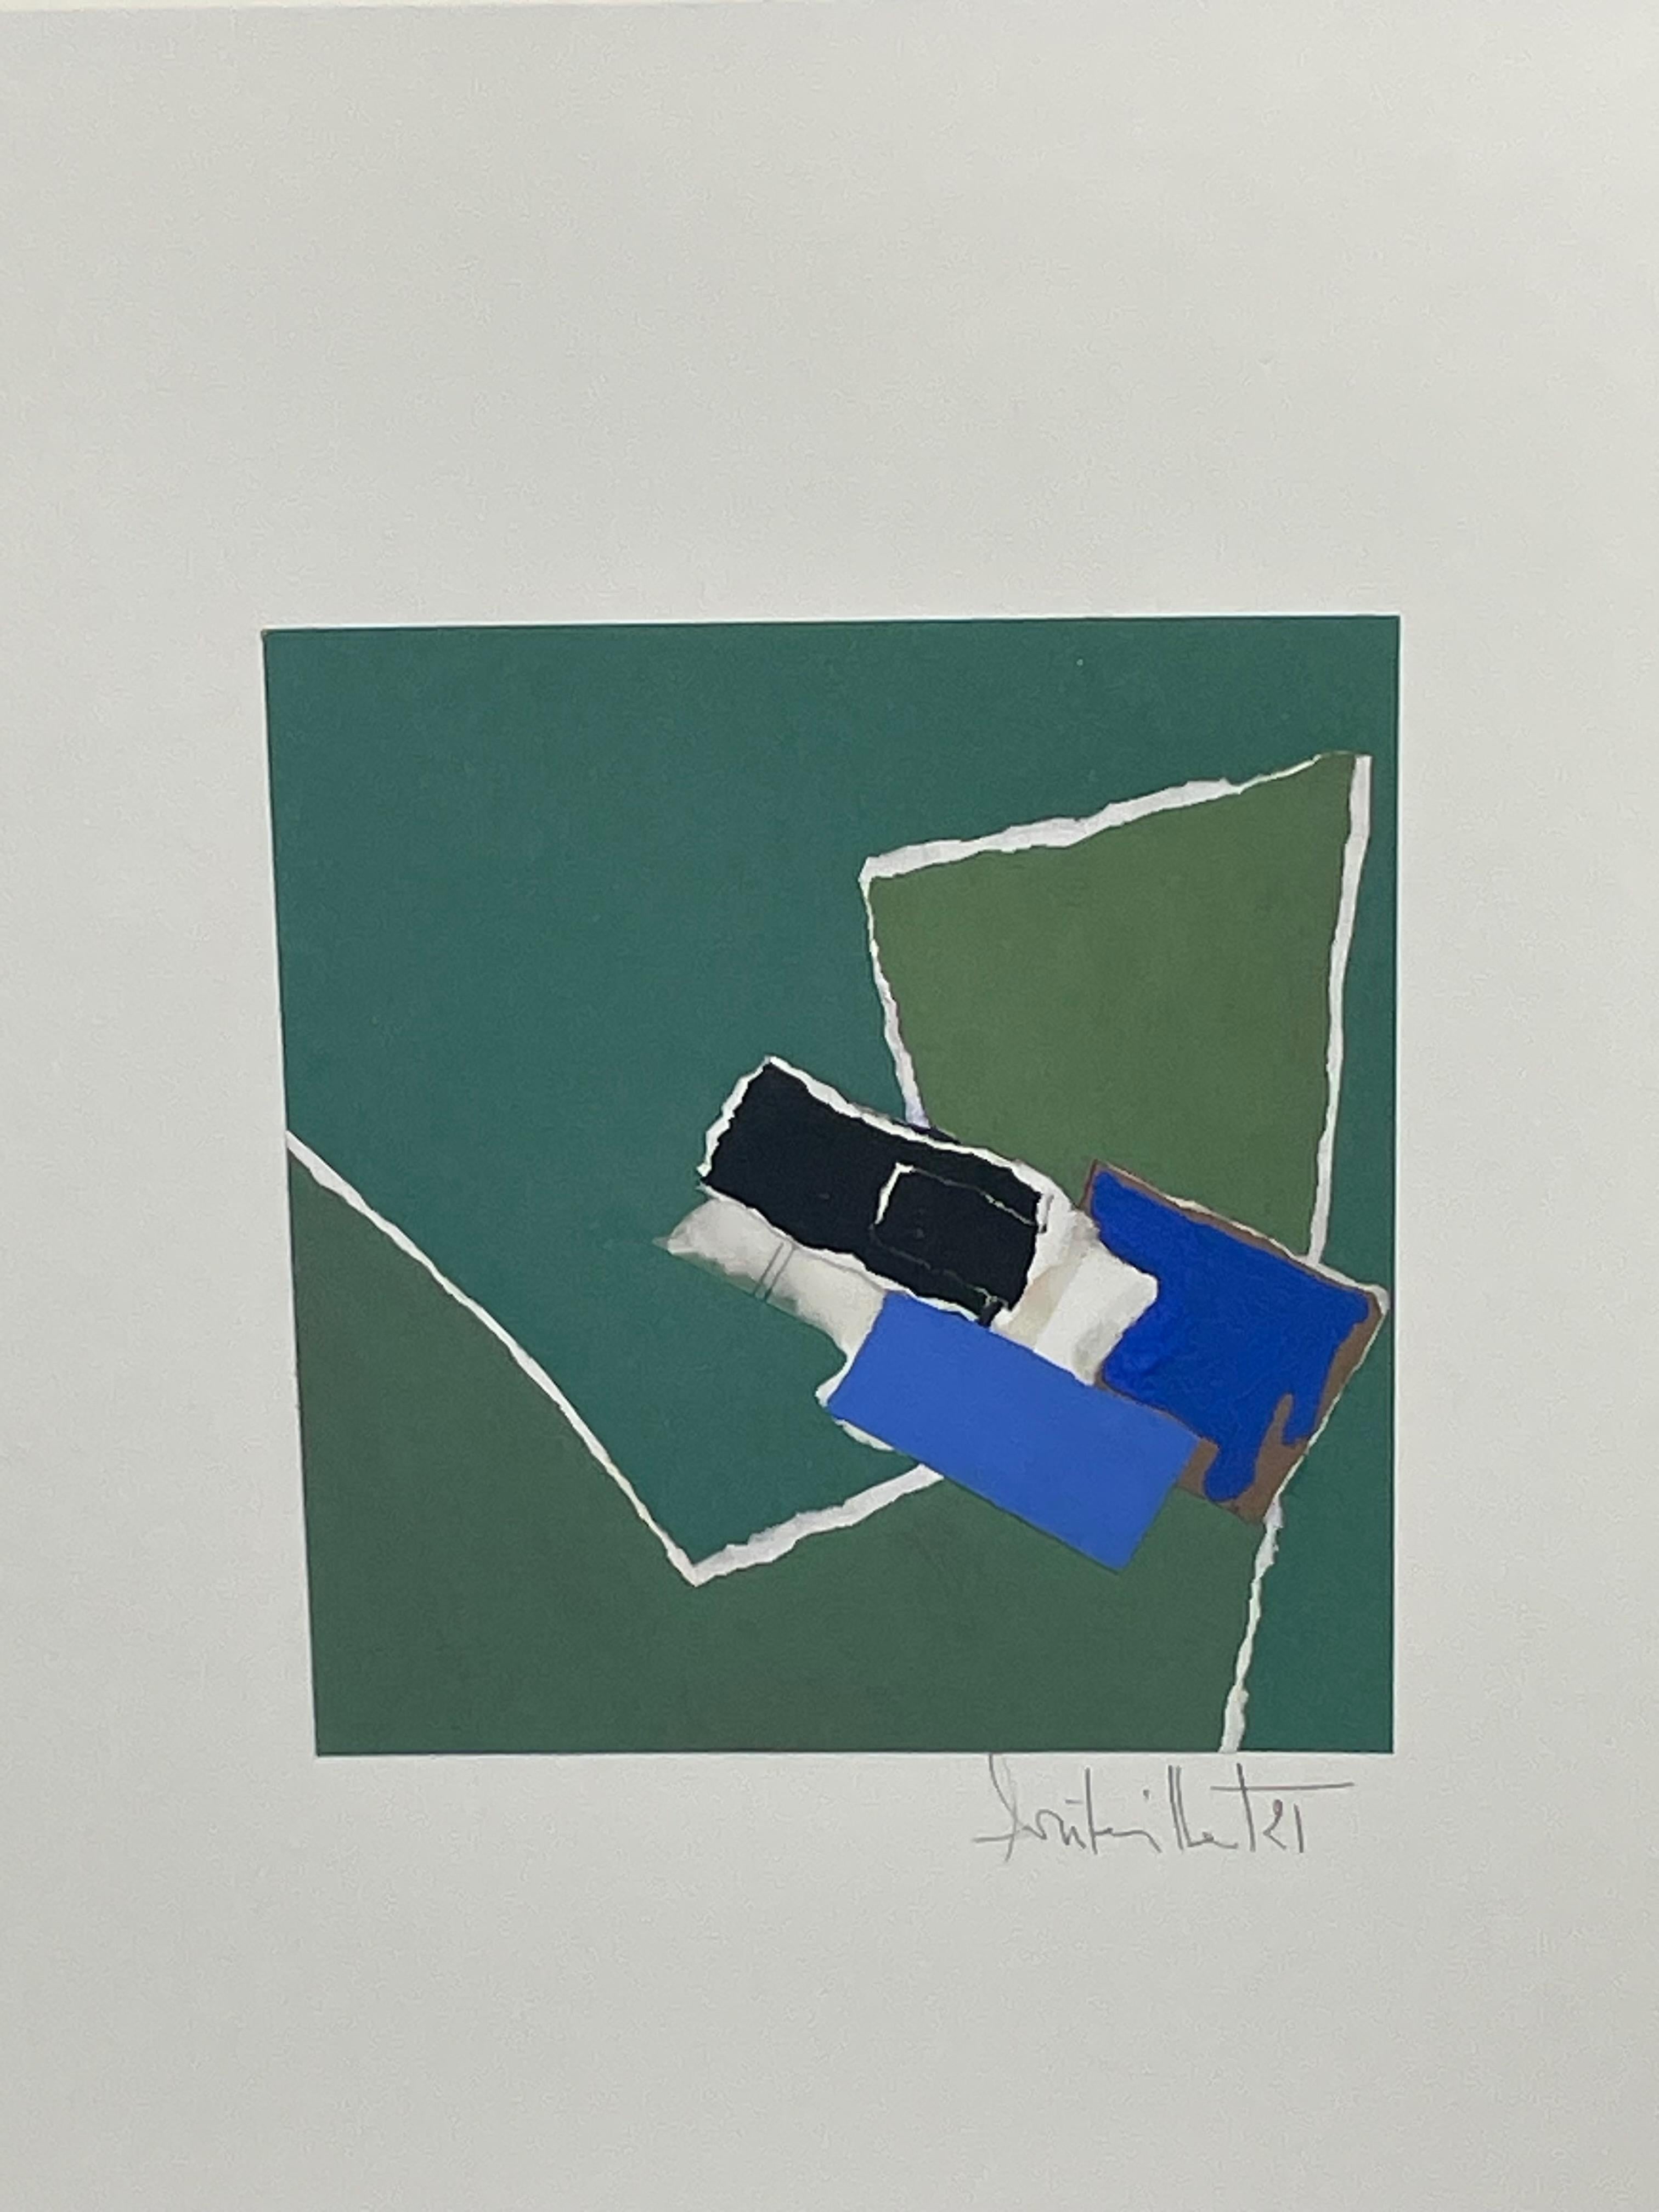 Isabelle Bouteillet ist eine autodidaktische französische Künstlerin, die hauptsächlich Collagen erstellt 
unter Verwendung von Mischmaterialien wie Acryl, Gouache und zerrissenem Papier.
Die Farben sind grün, blau, schwarz und weiß.
Signiert vom